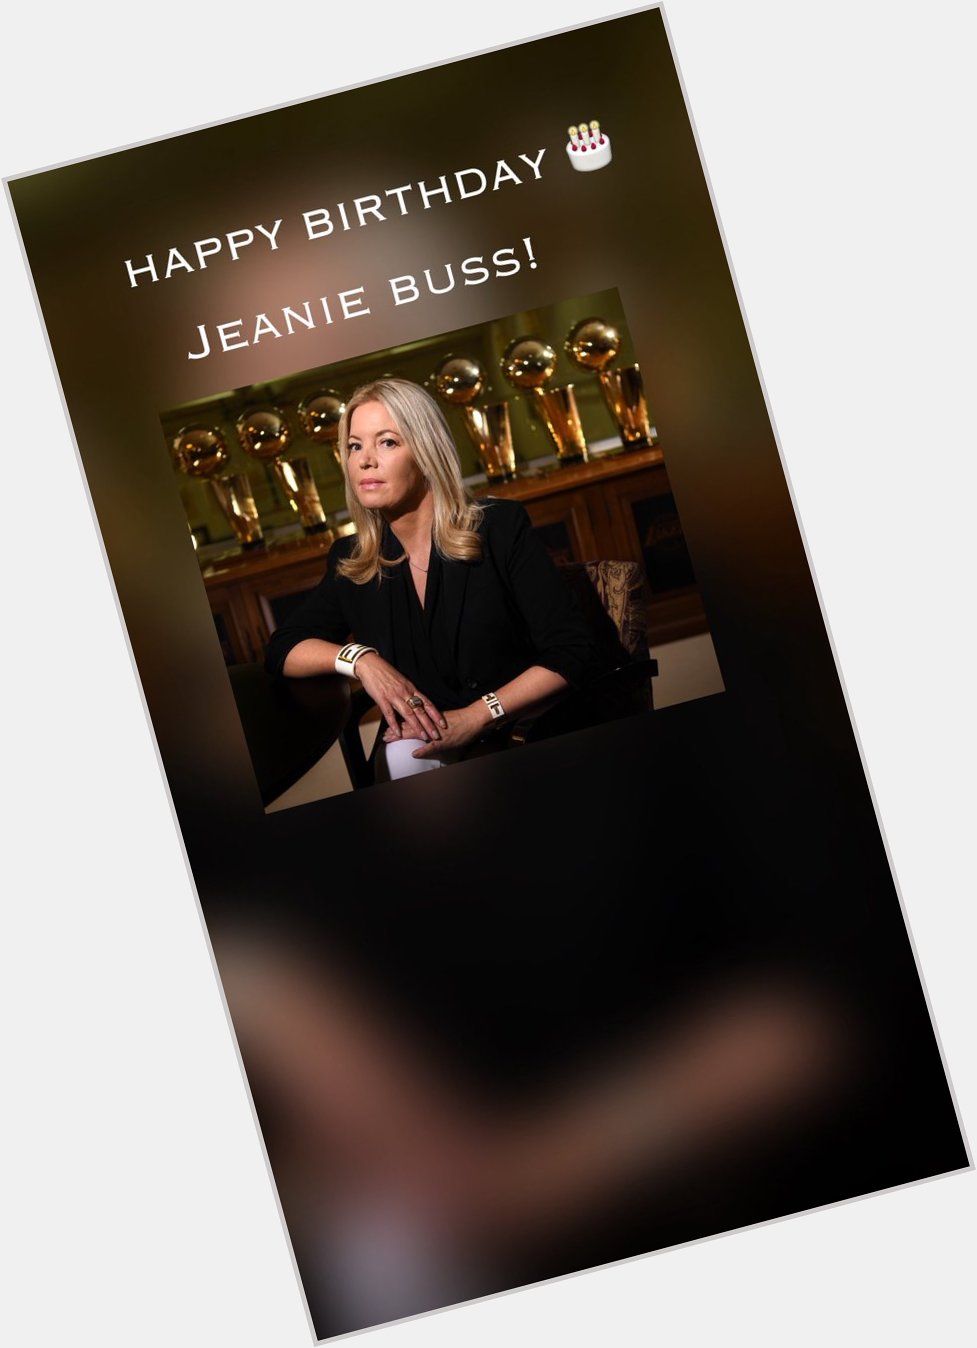  Happy birthday Jeanie Buss! 